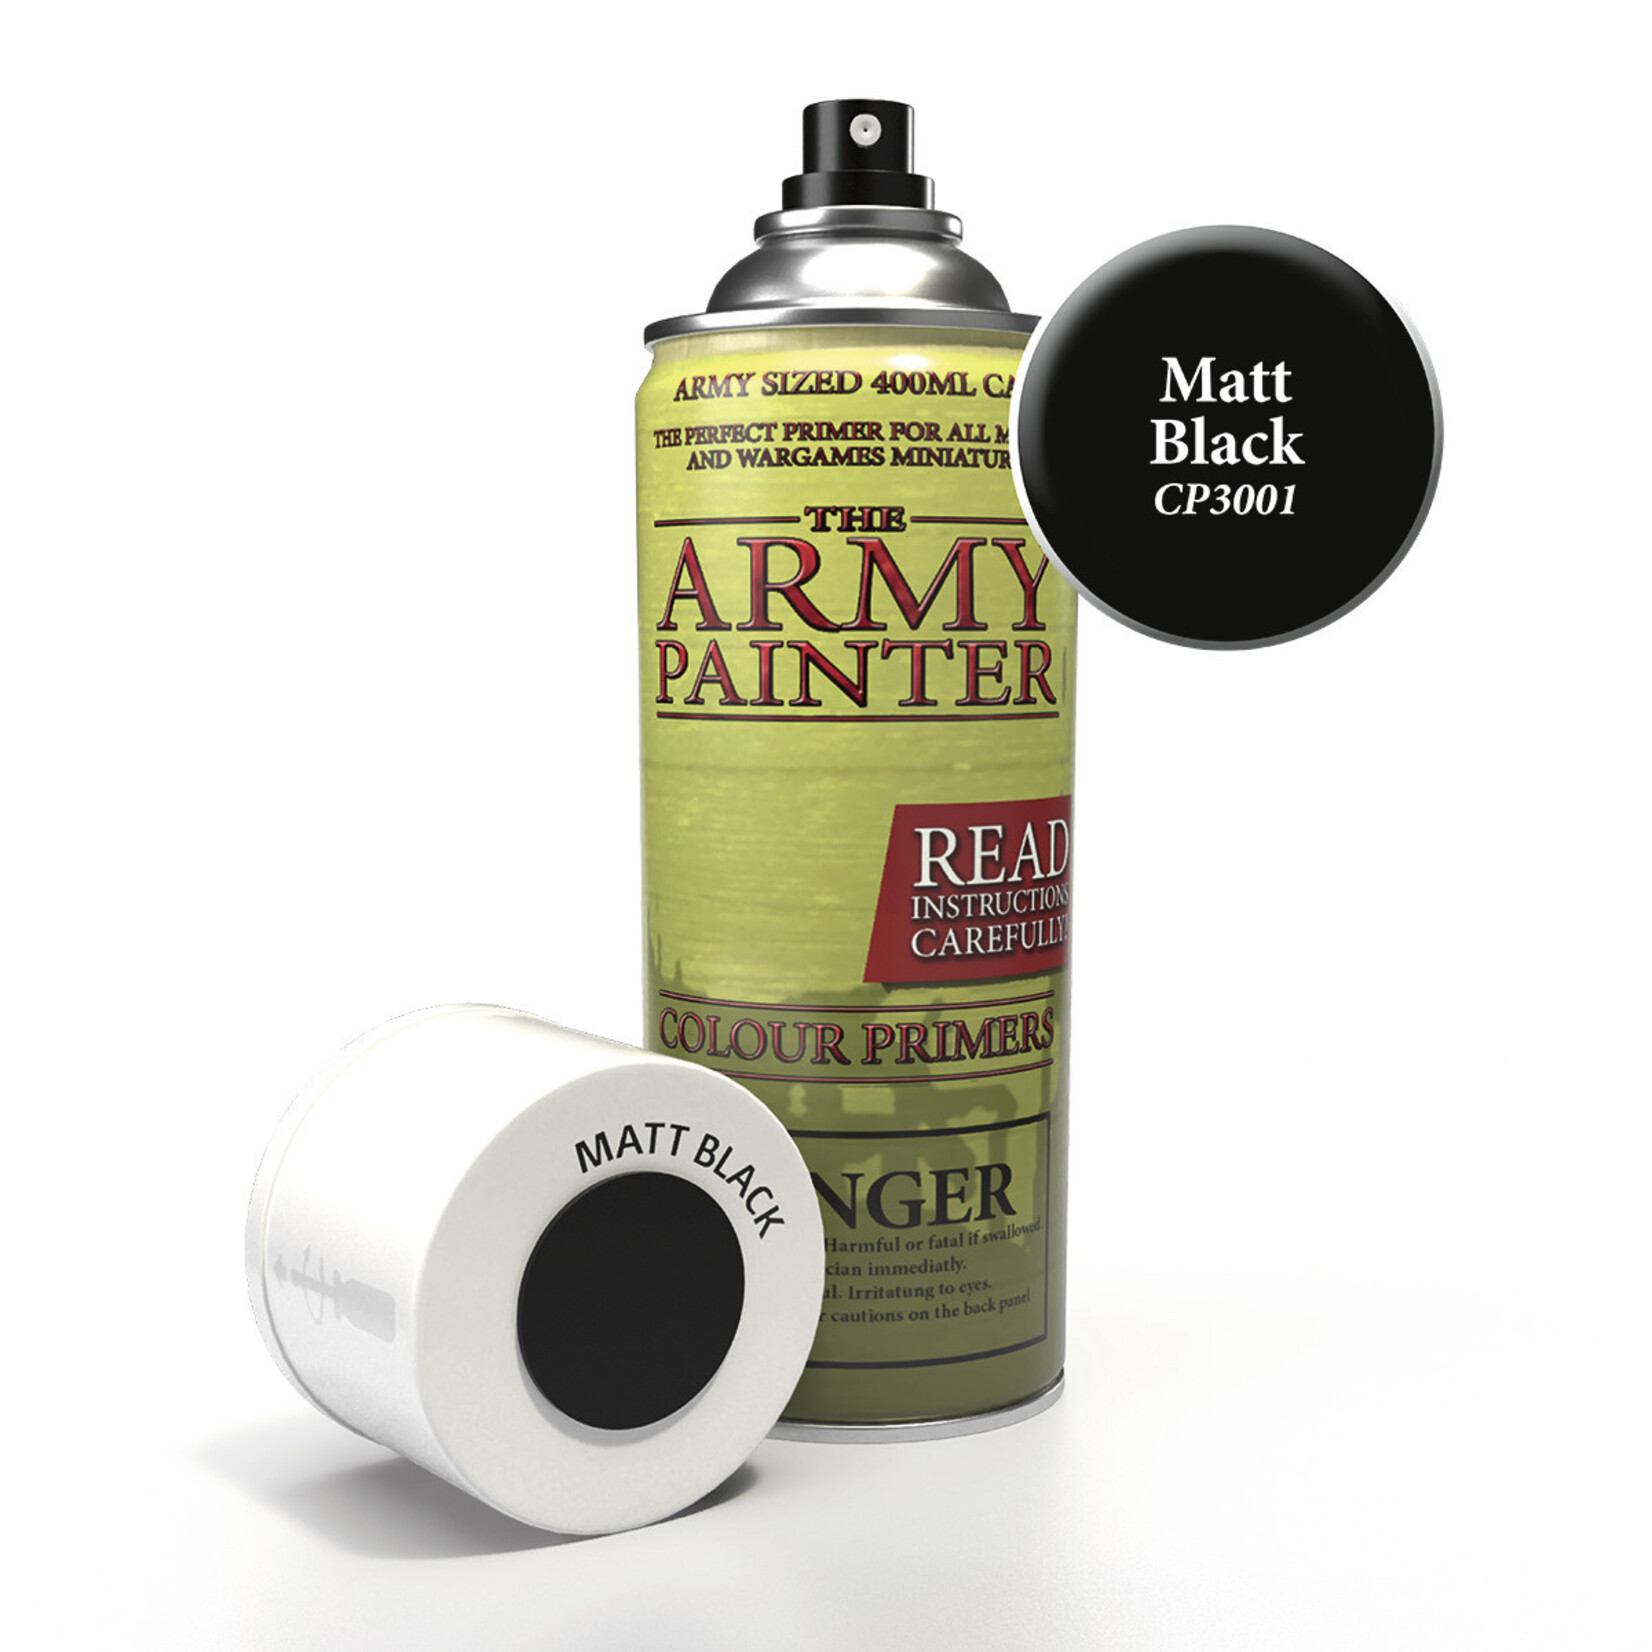 The Army Painter Color Primer Matte Black